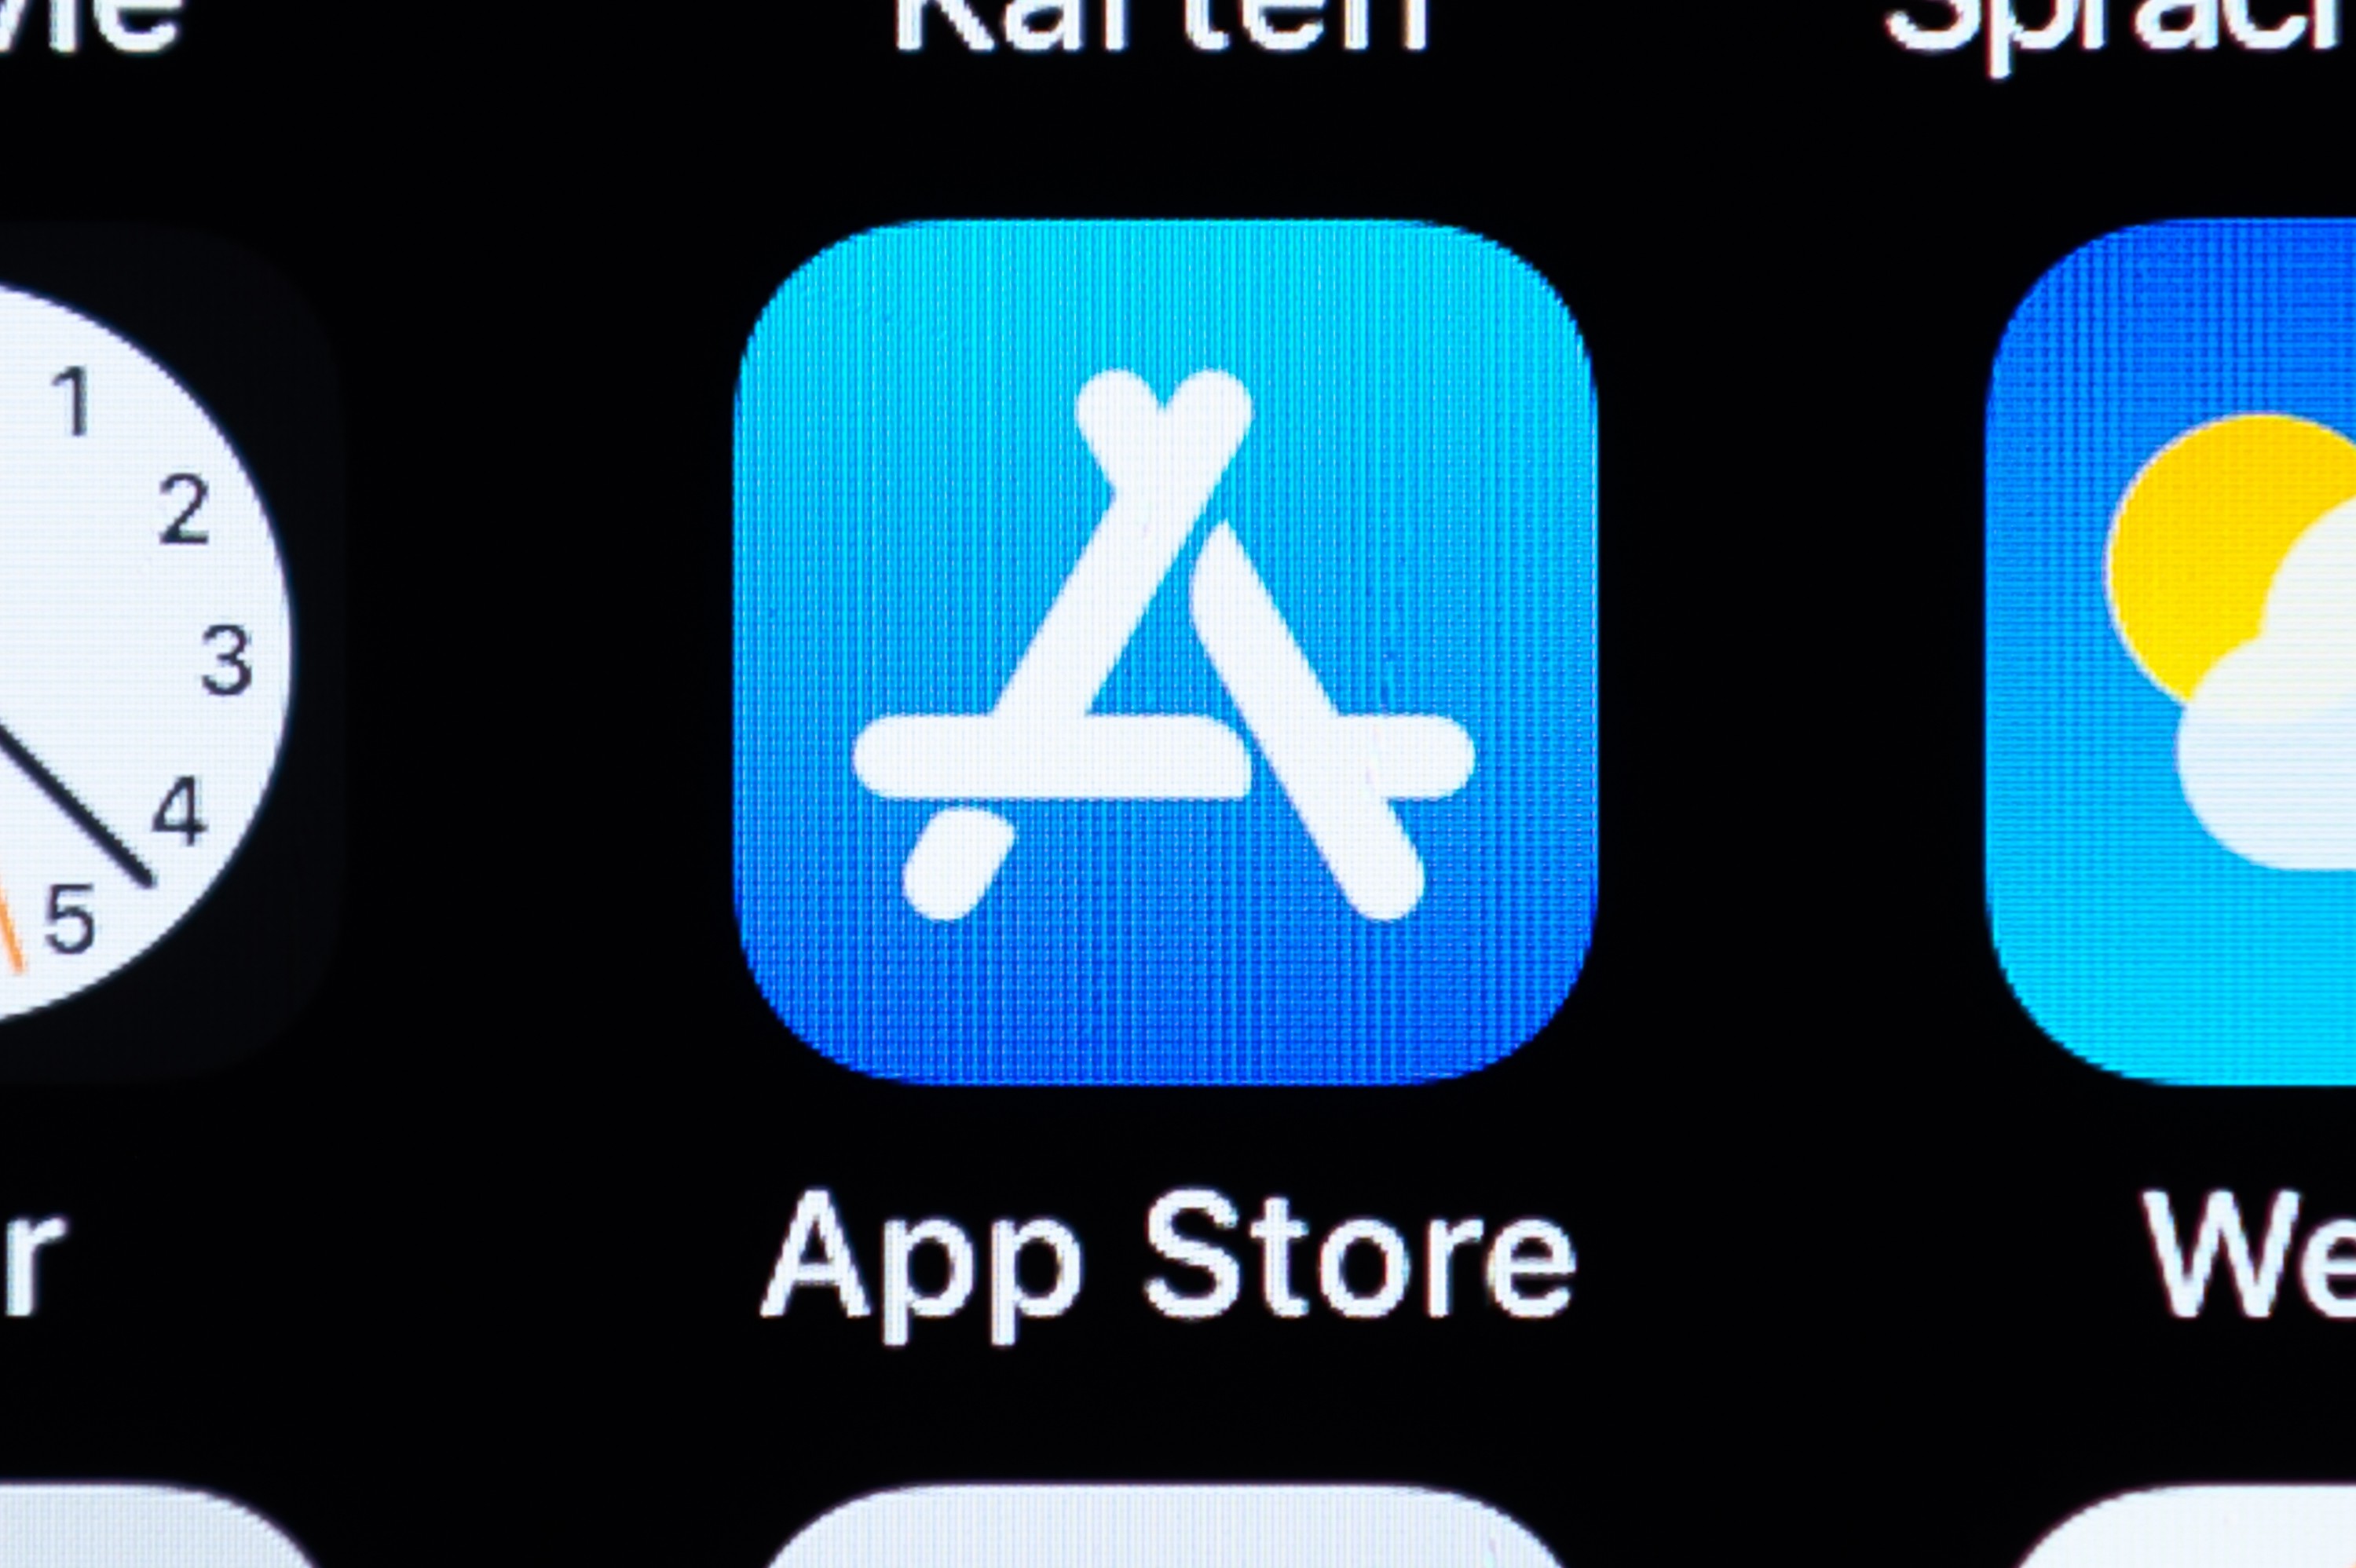 Госдума хочет снизить комиссию App Store до 20% и разрешить сторонние магазины приложений